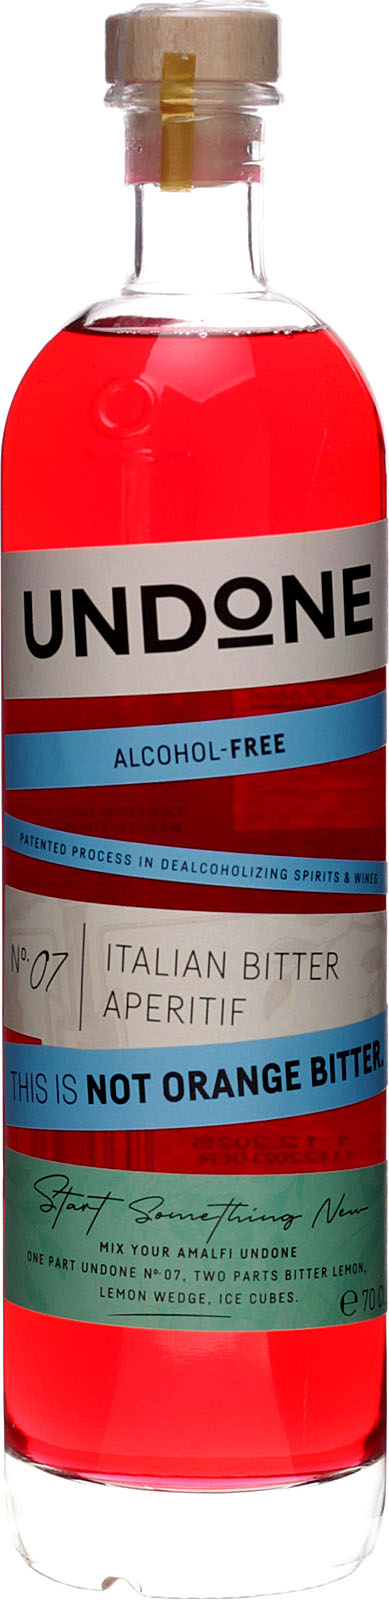 Undone No. 7 Italian Bitter Type - Bei uns im Shop kauf